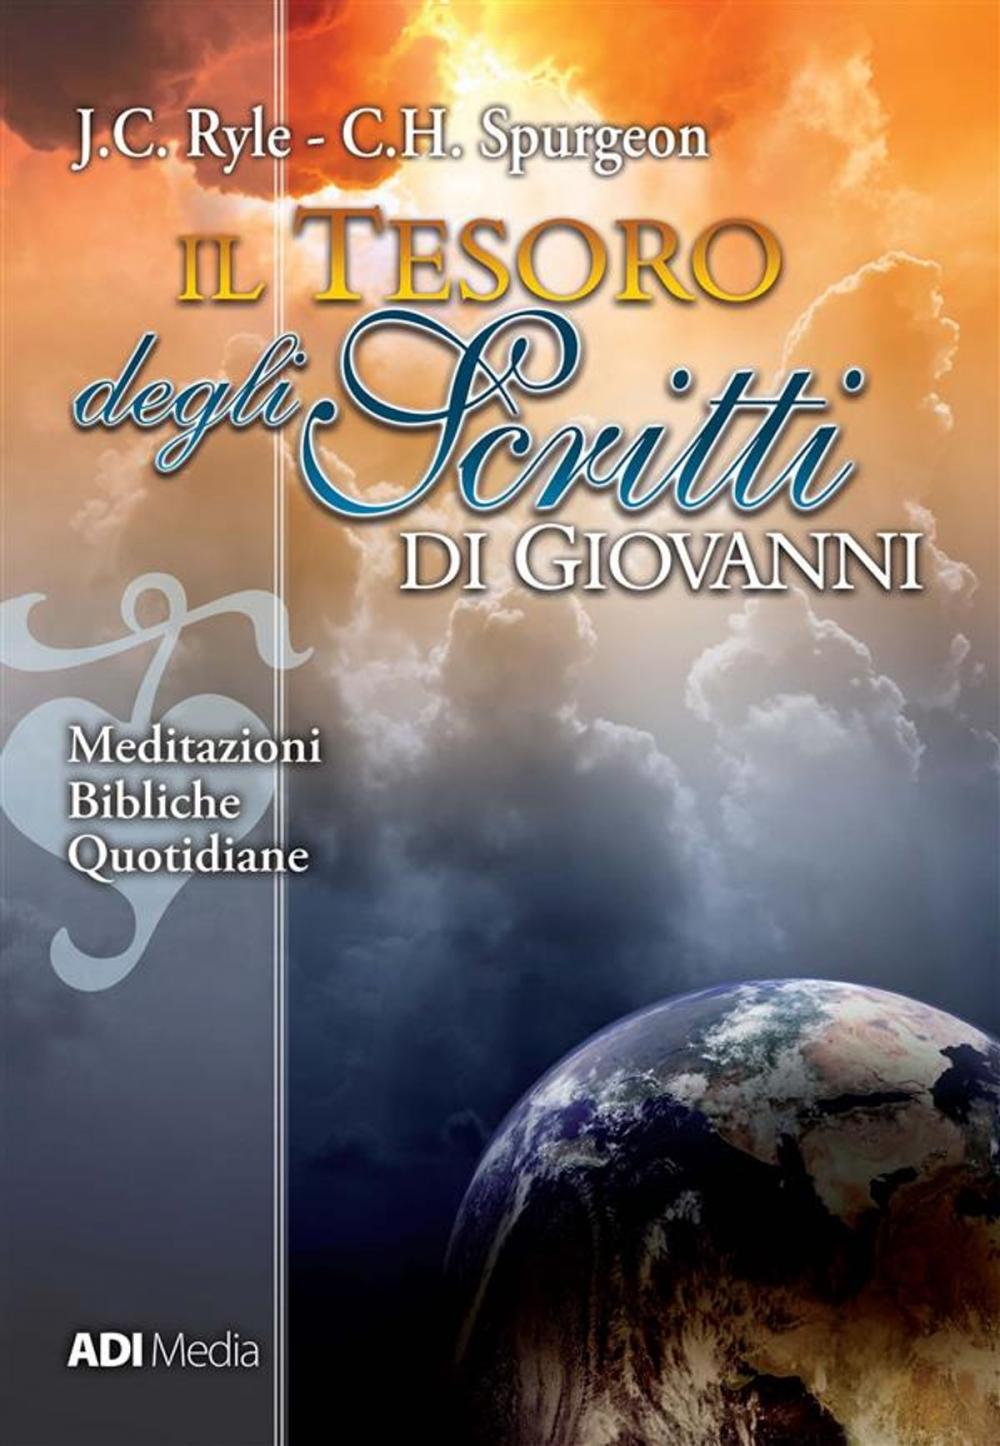 Big bigCover of Il Tesoro degli Scritti di Giovanni